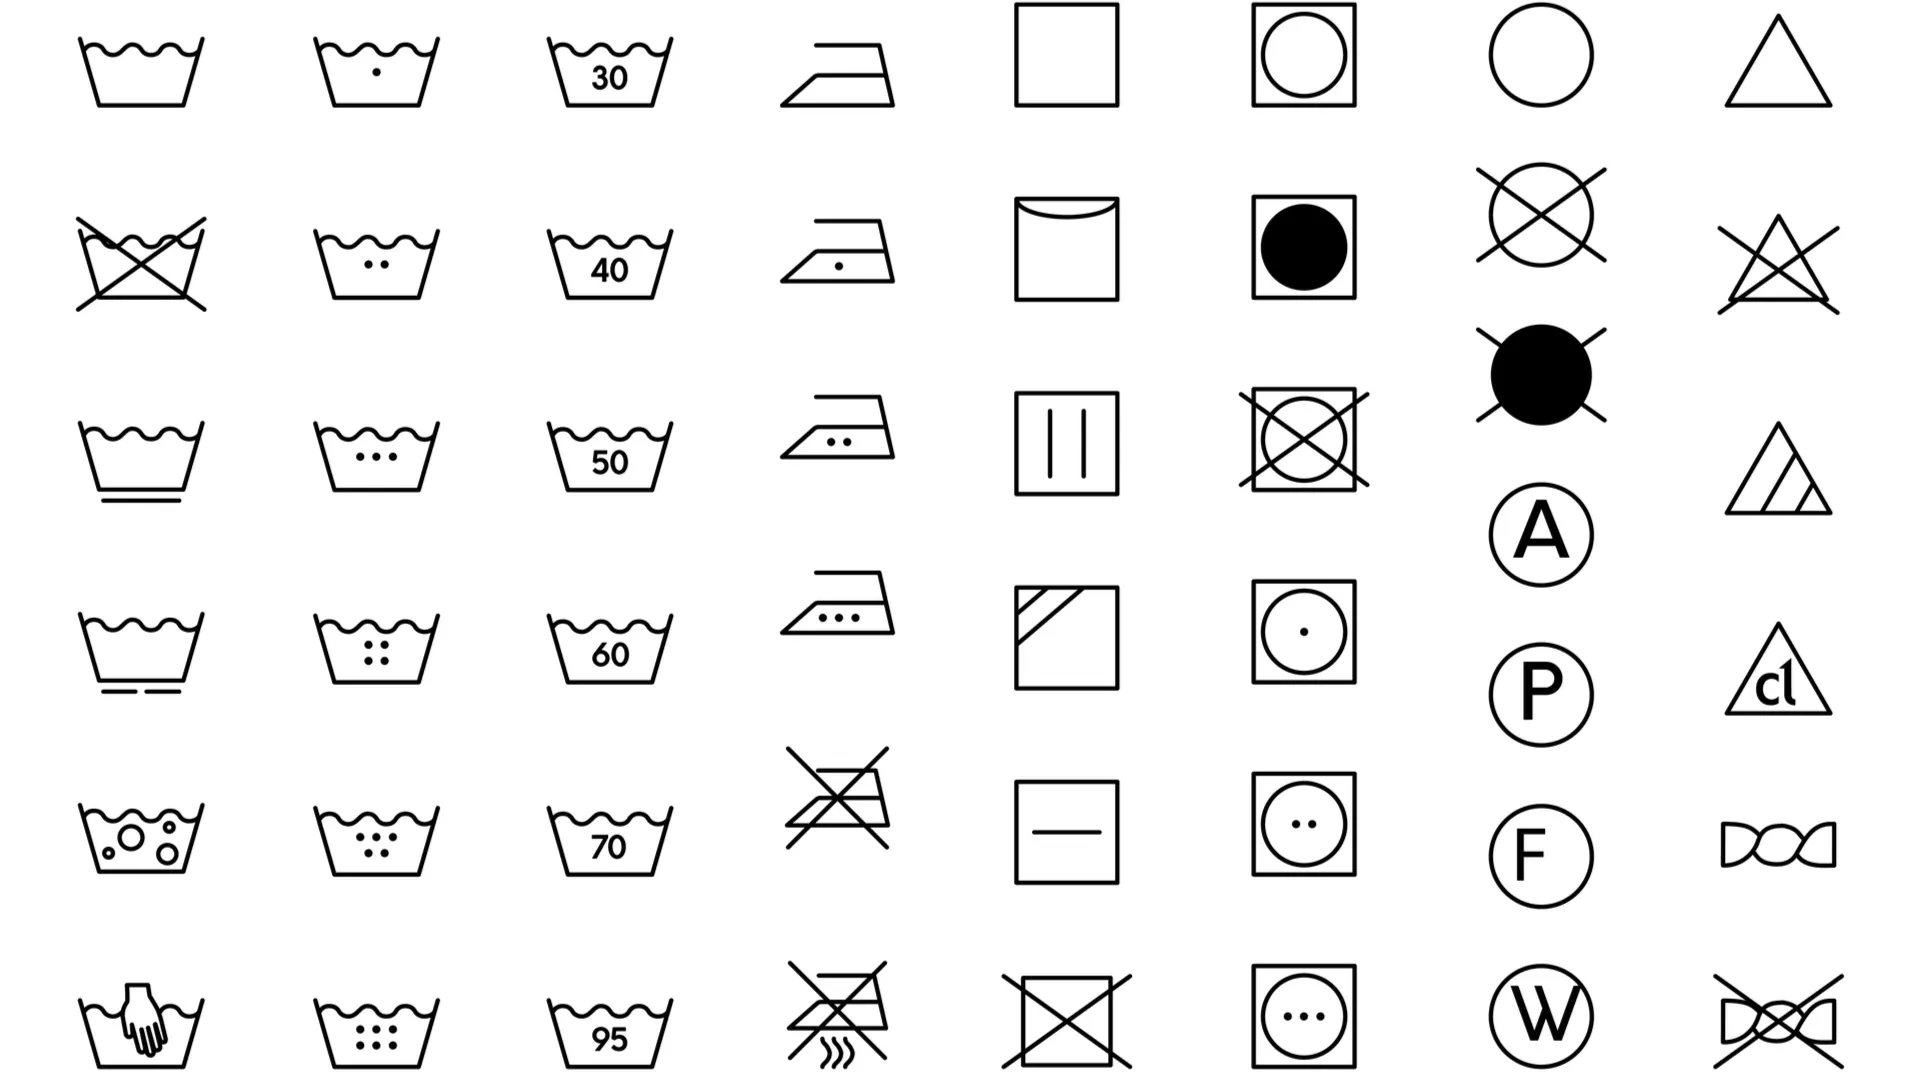 Conjunto de símbolos nas etiquetas das roupas que indicam instruções de lavagem